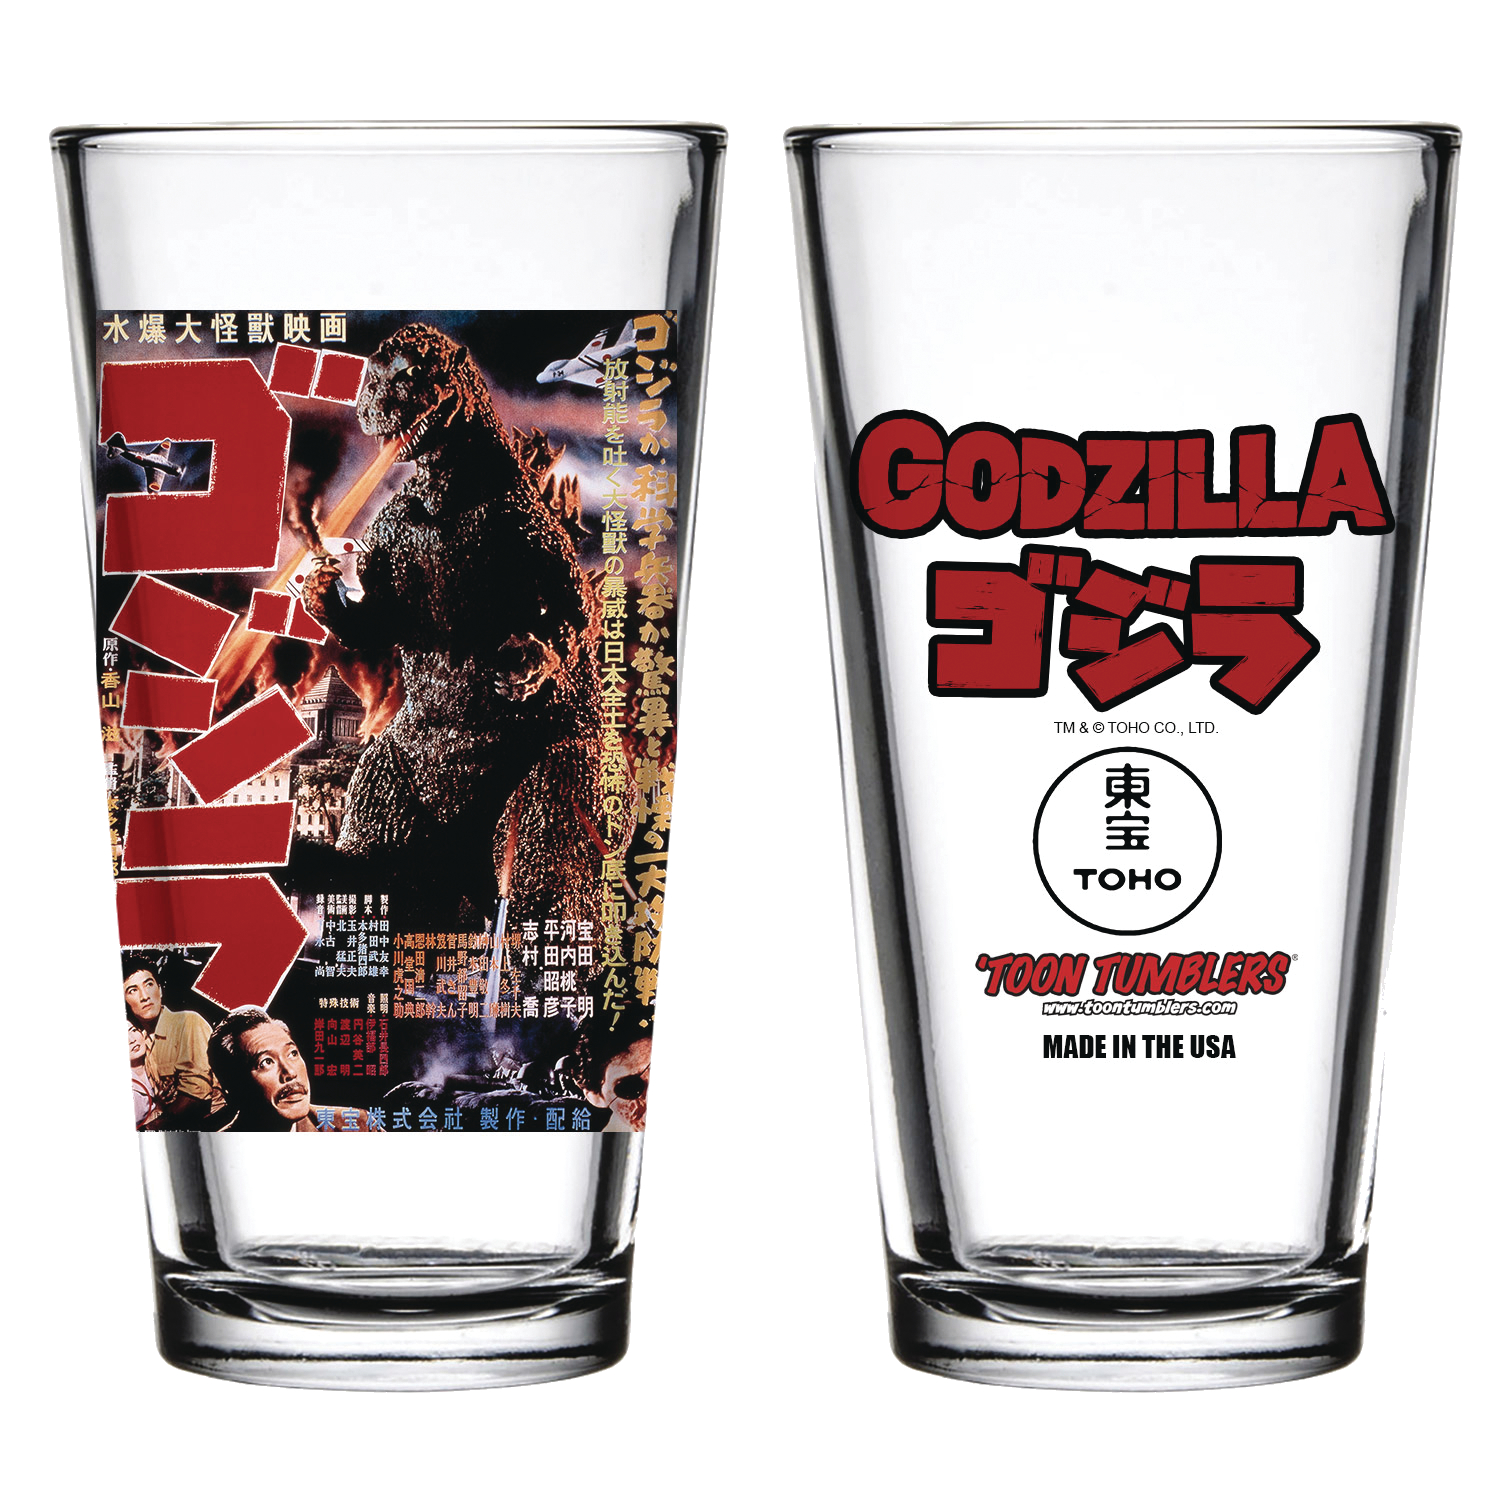 Godzilla 1954 Movie Pint Glass